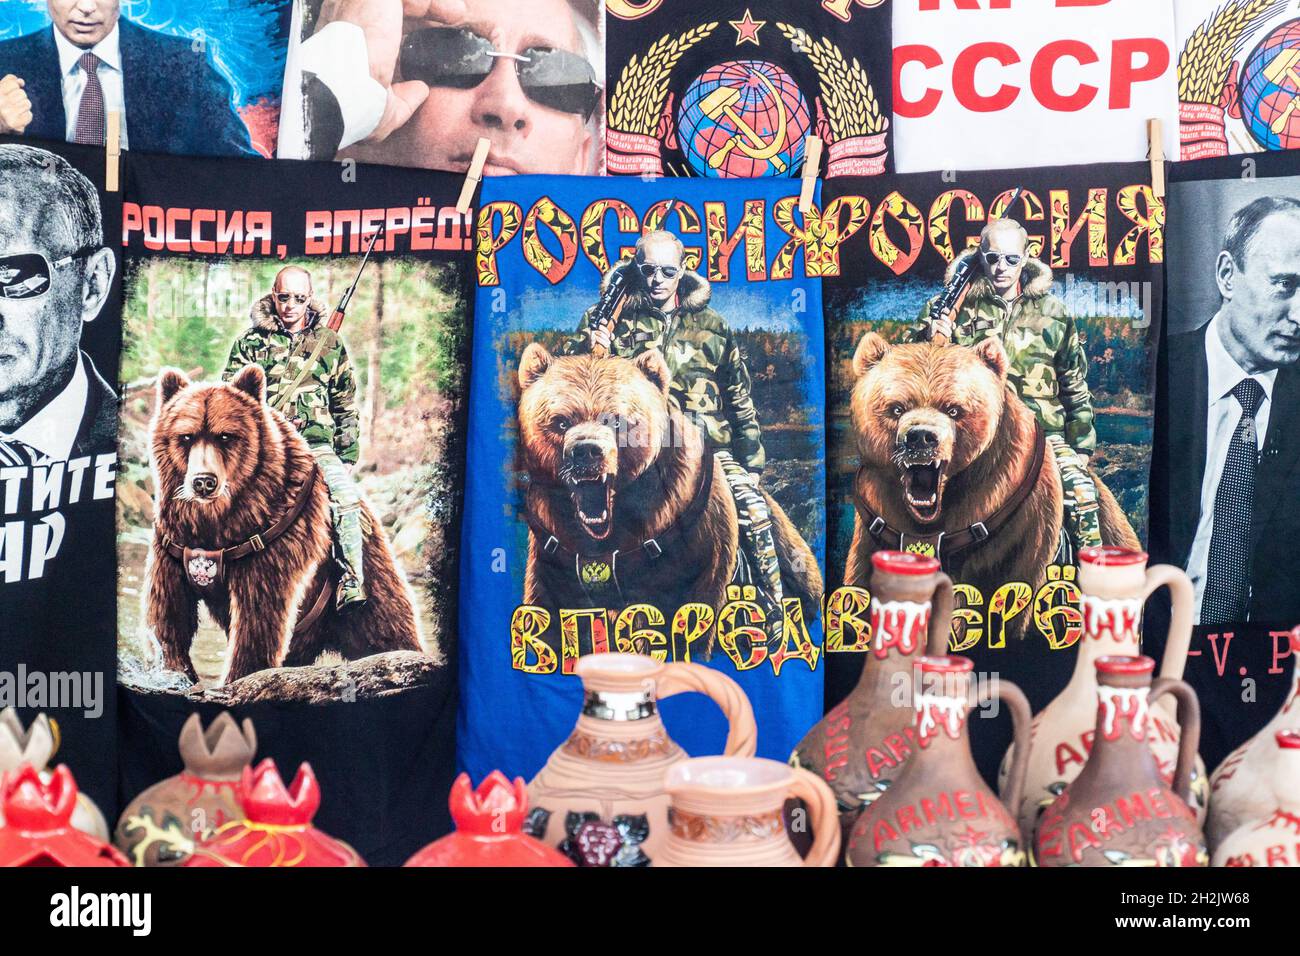 EREVAN, ARMÉNIE - 5 JUILLET 2017 : T-shirts souvenirs avec Poutine sur un marché à Erevan, capitale de l'Arménie Banque D'Images